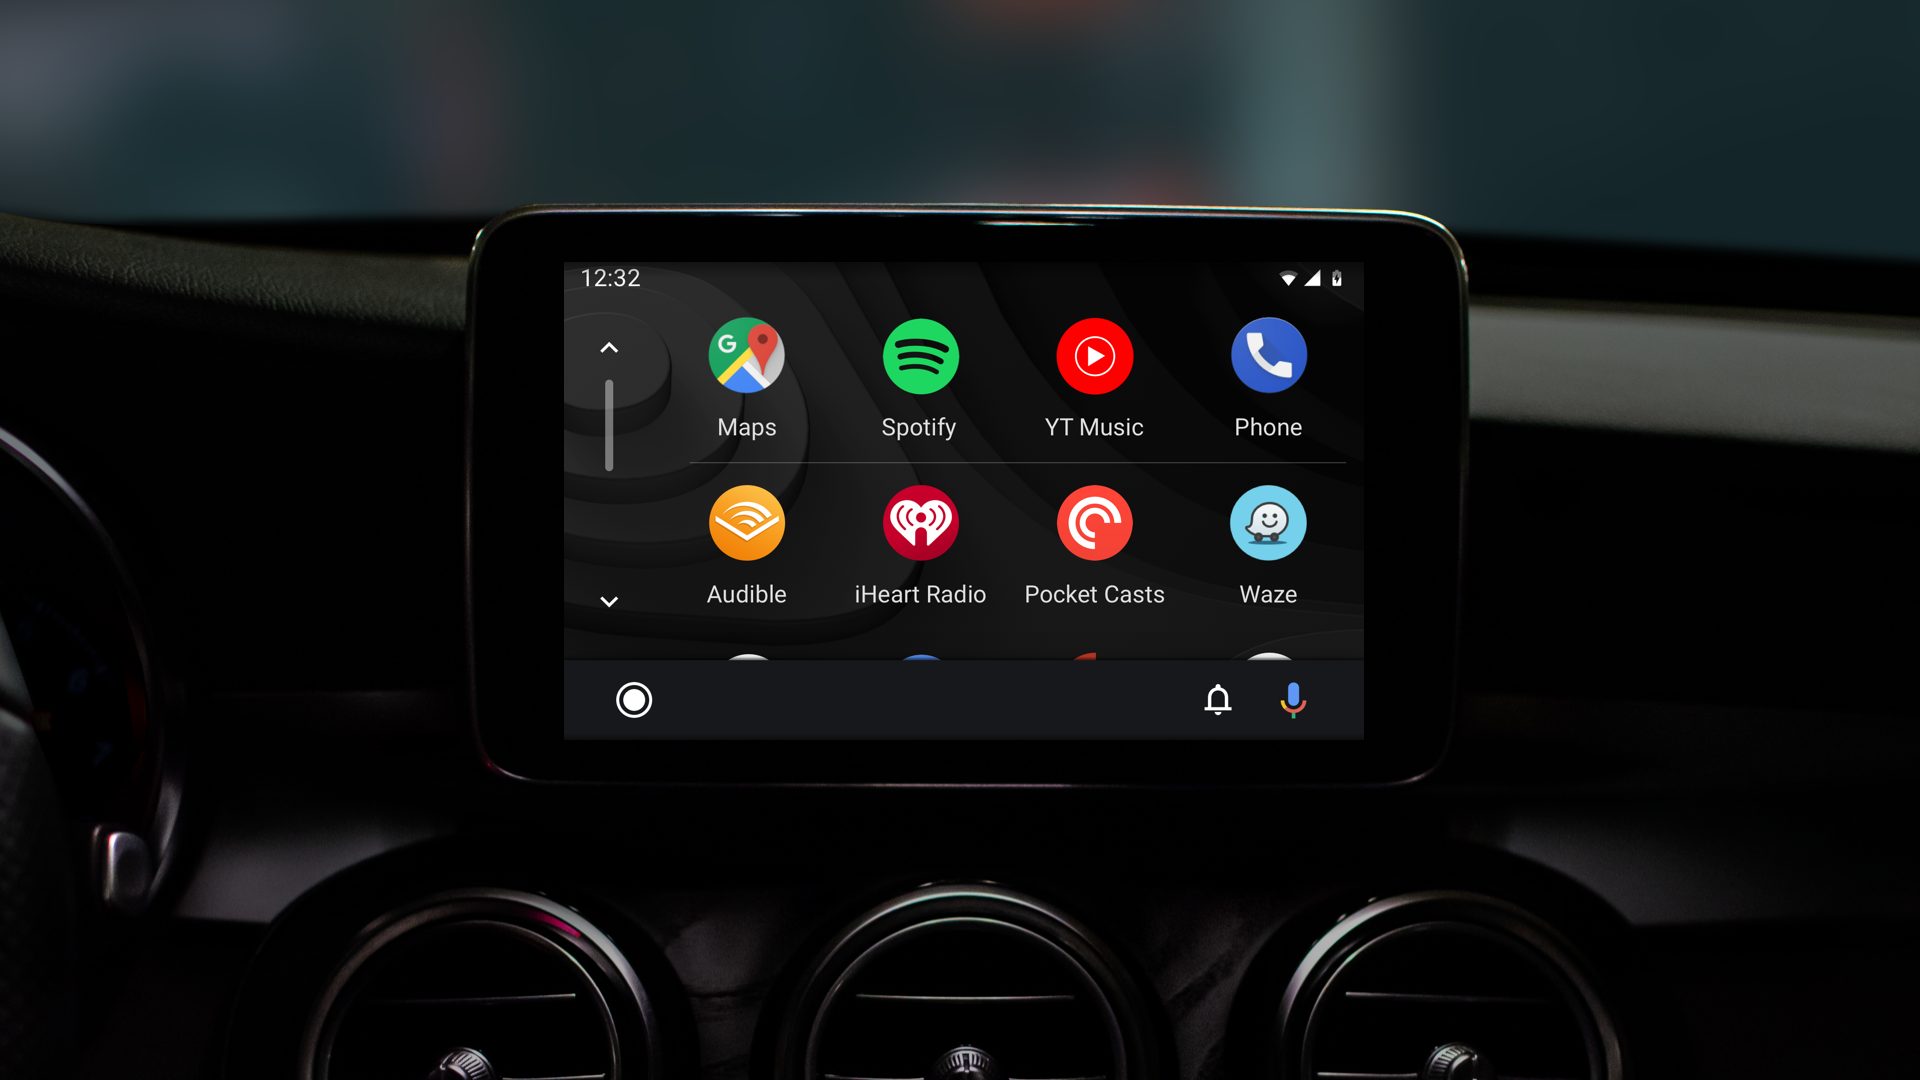 Anda sekarang dapat menggunakan Android Auto secara nirkabel dengan smartphones Samsung kelas atas